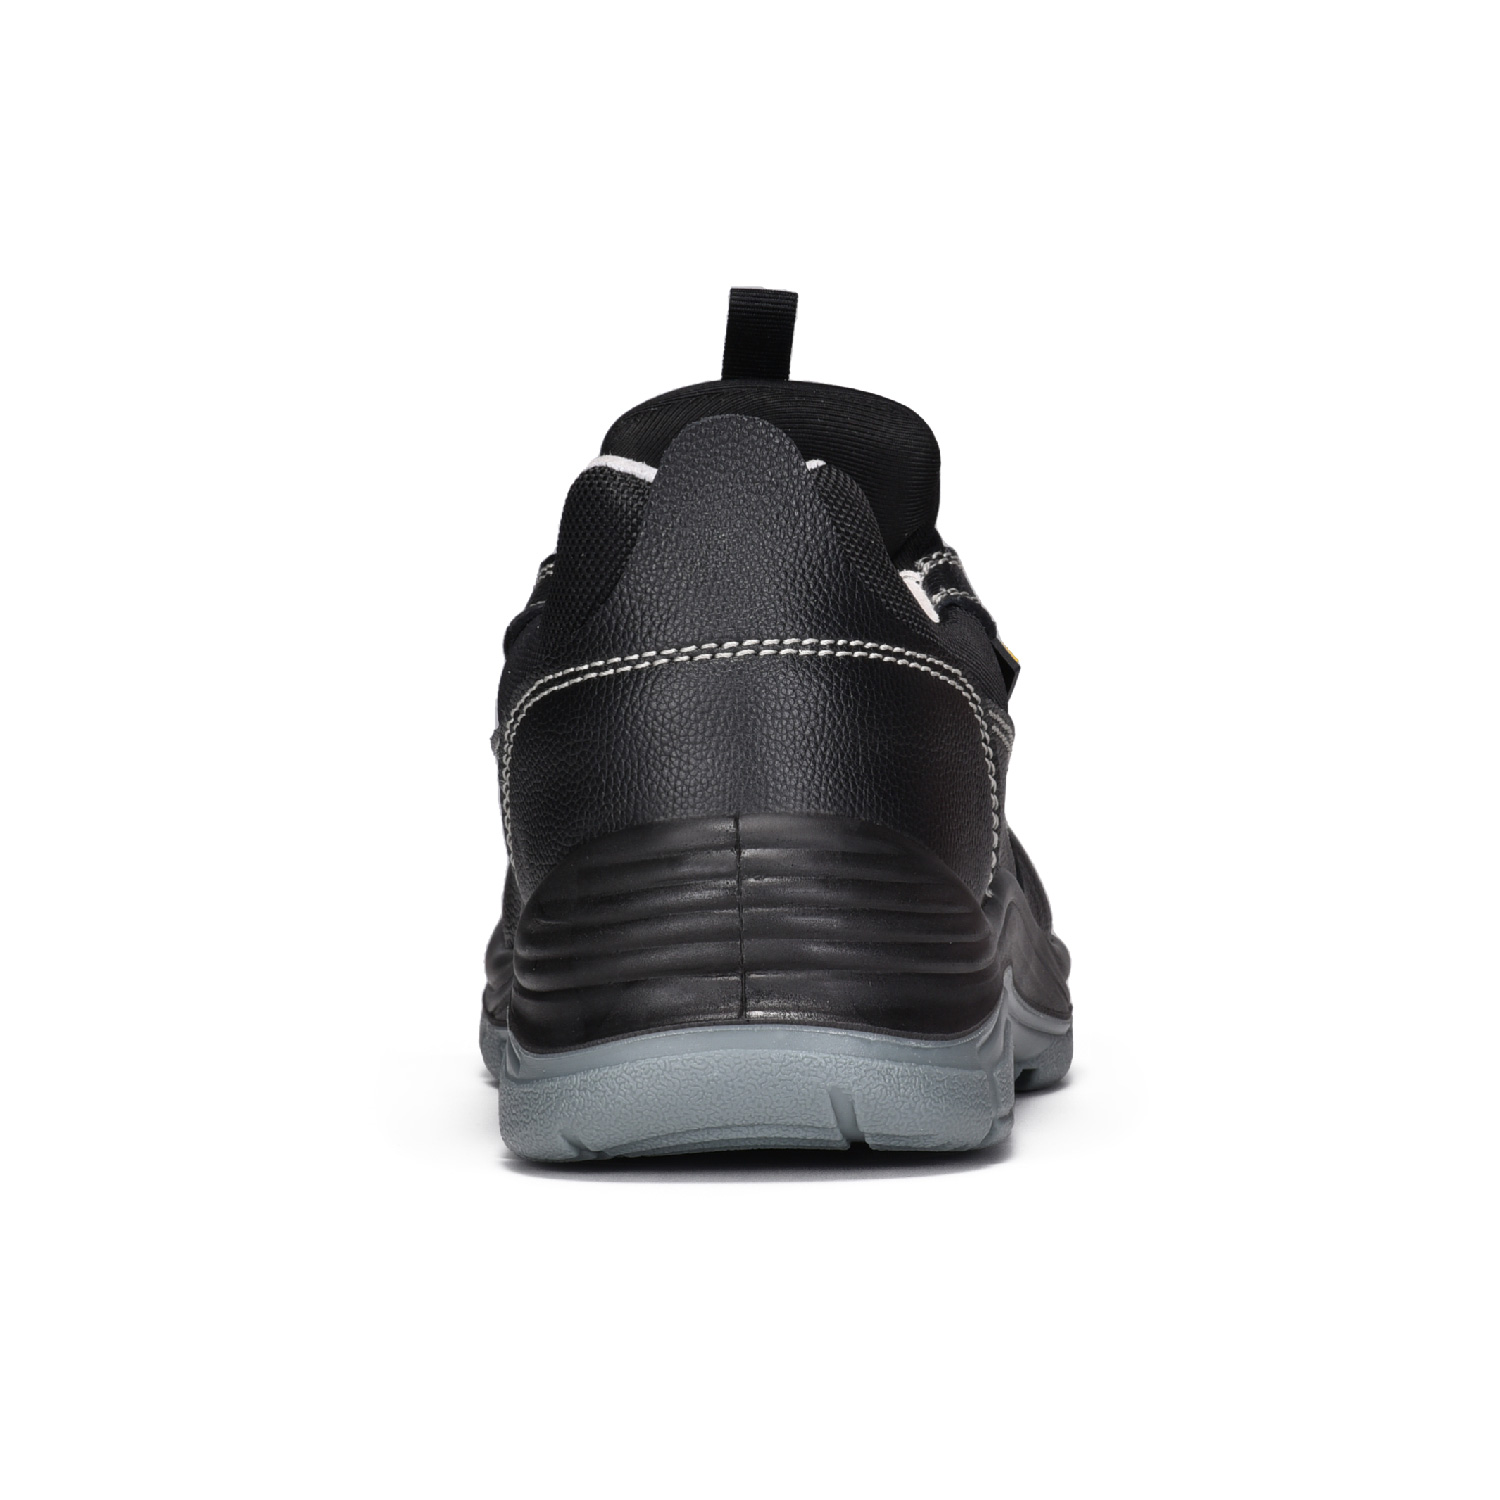 Zapatos de seguridad con puntera de acero S3 de corte bajo súper sin cordones L-7525